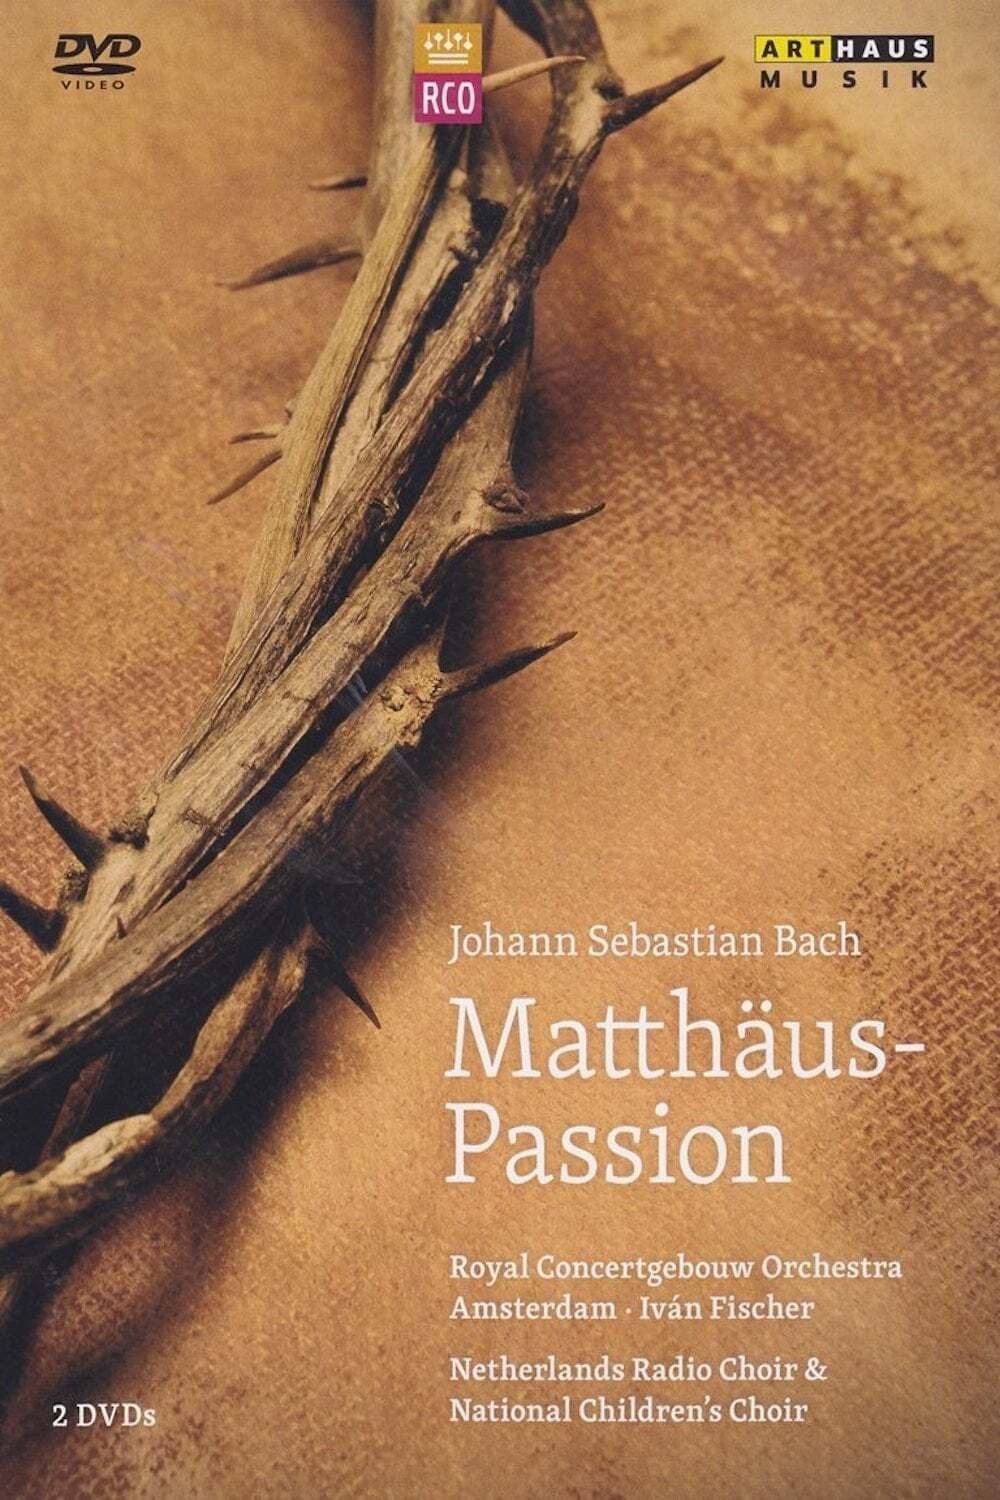 Johann Sebastian Bach: St Matthew Passion (RCO)